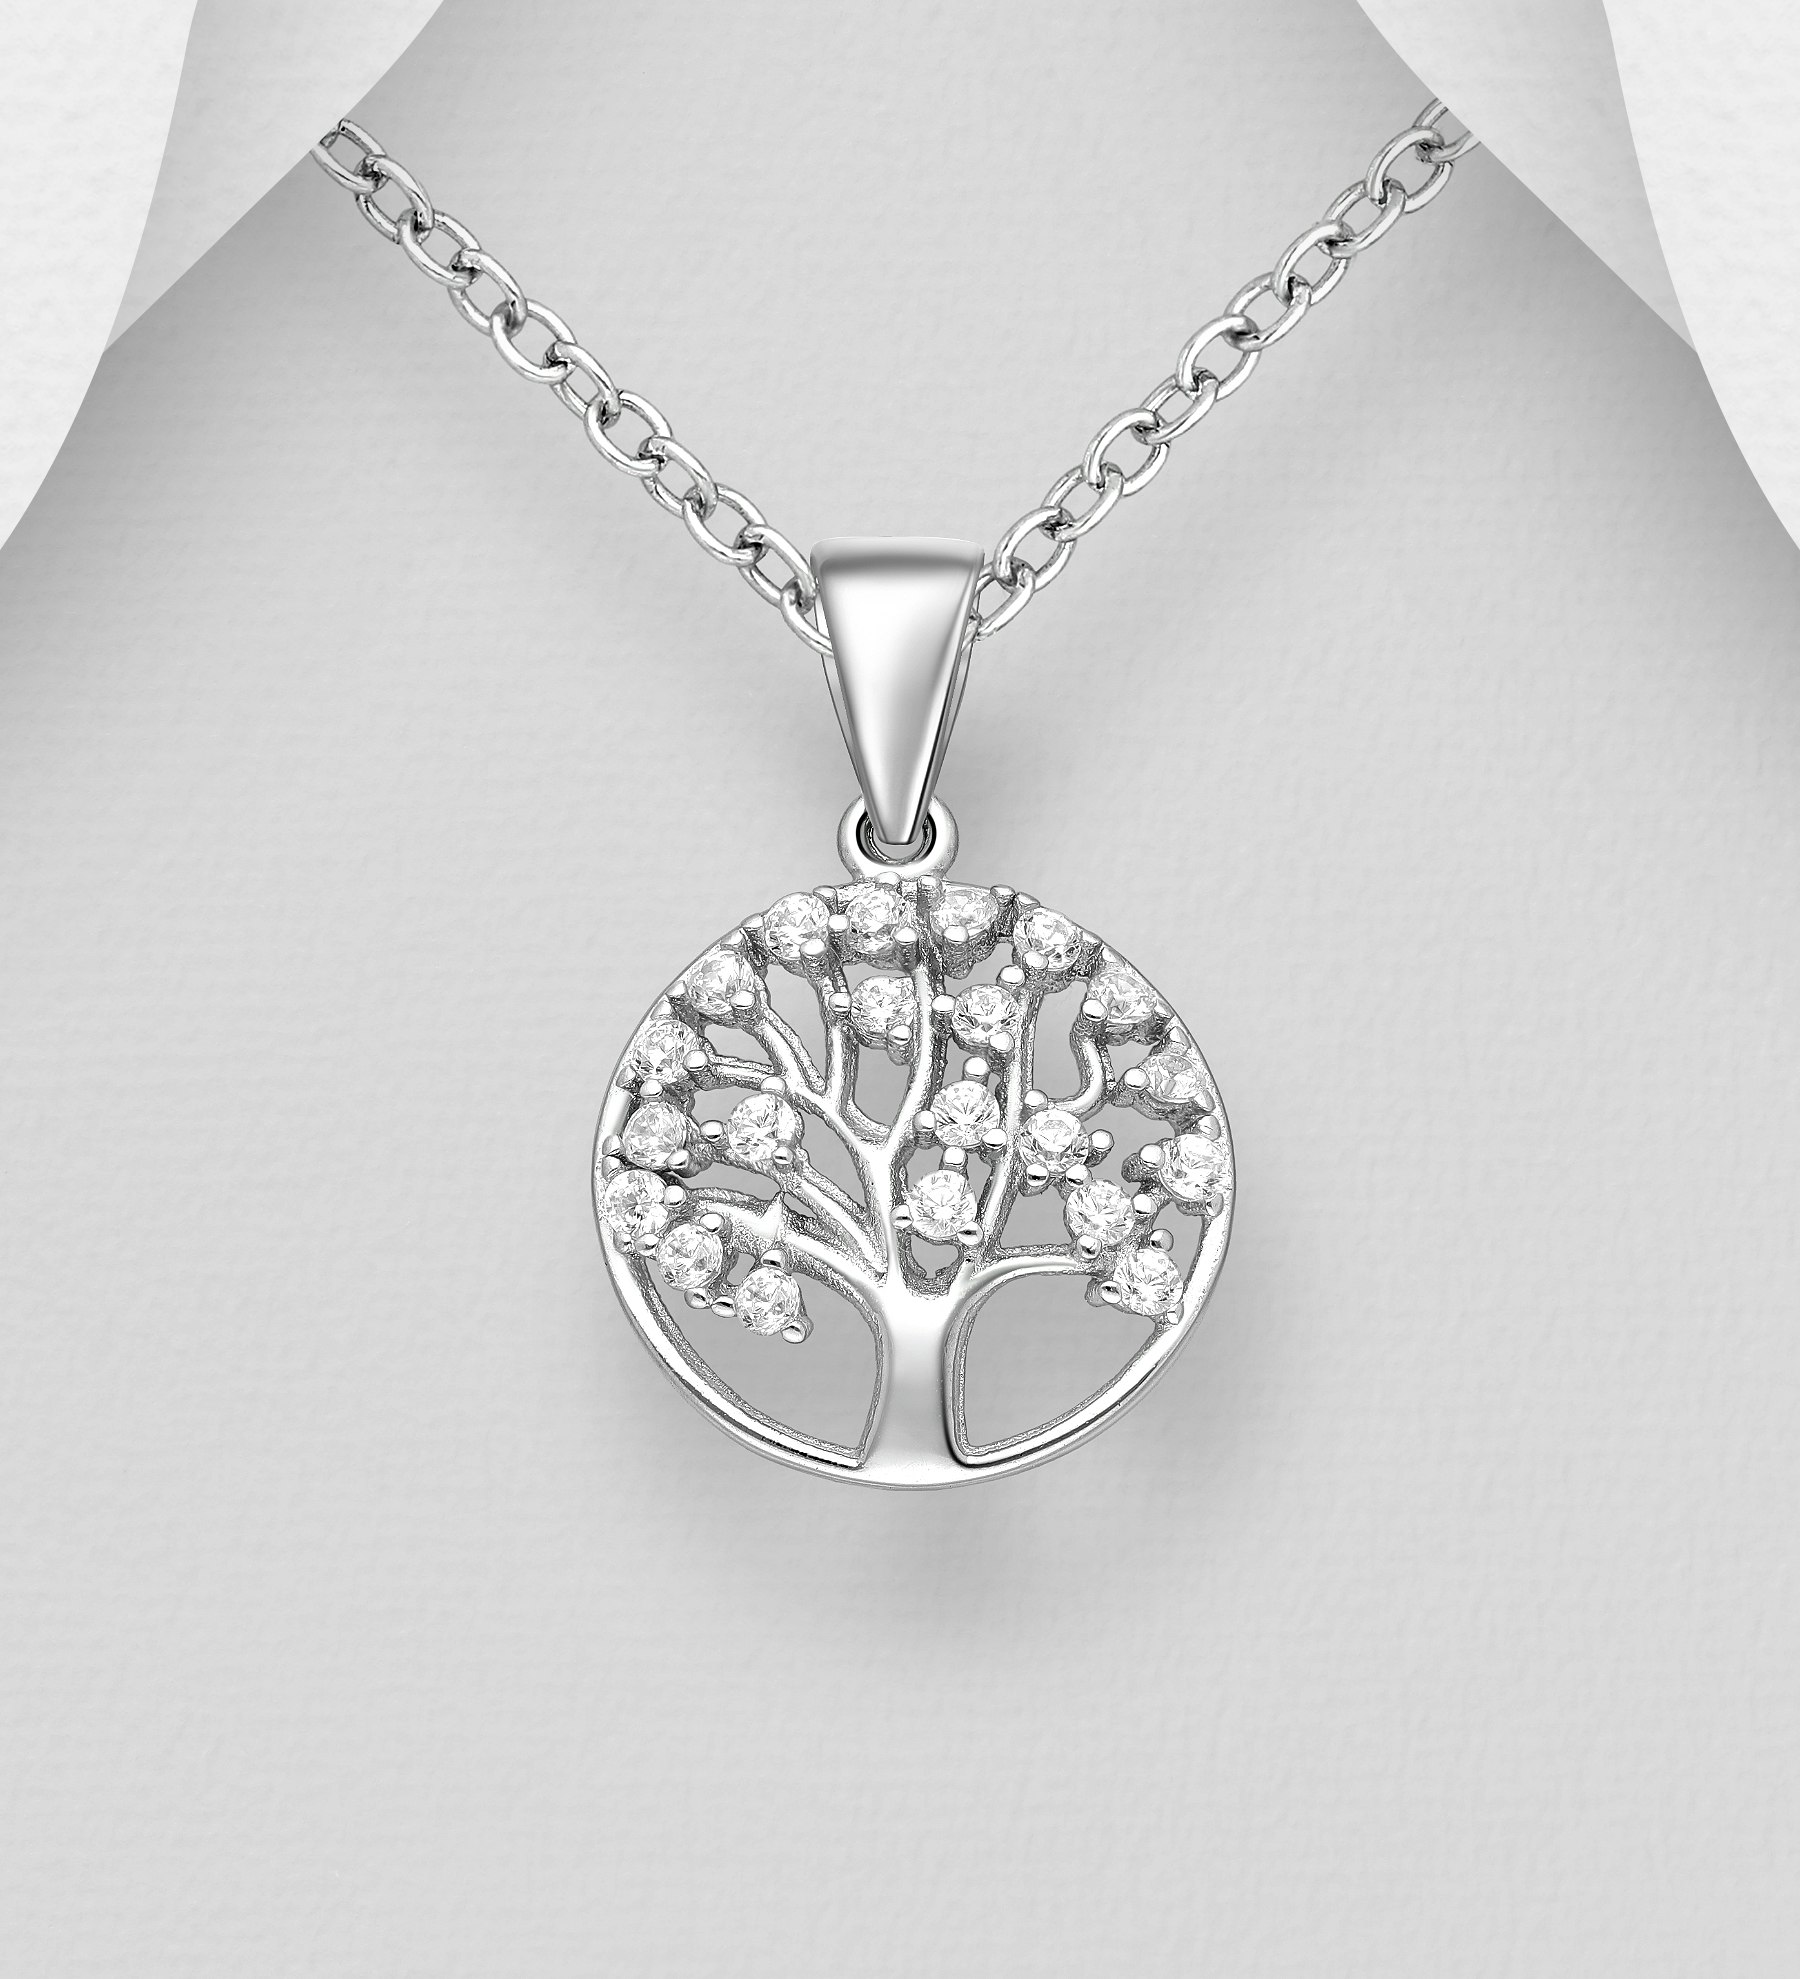 Silverhalsband Livets träd fullt av vackra glittriga stenar - elegant halsband till tjej/ dam i äkta 925 sterling silver